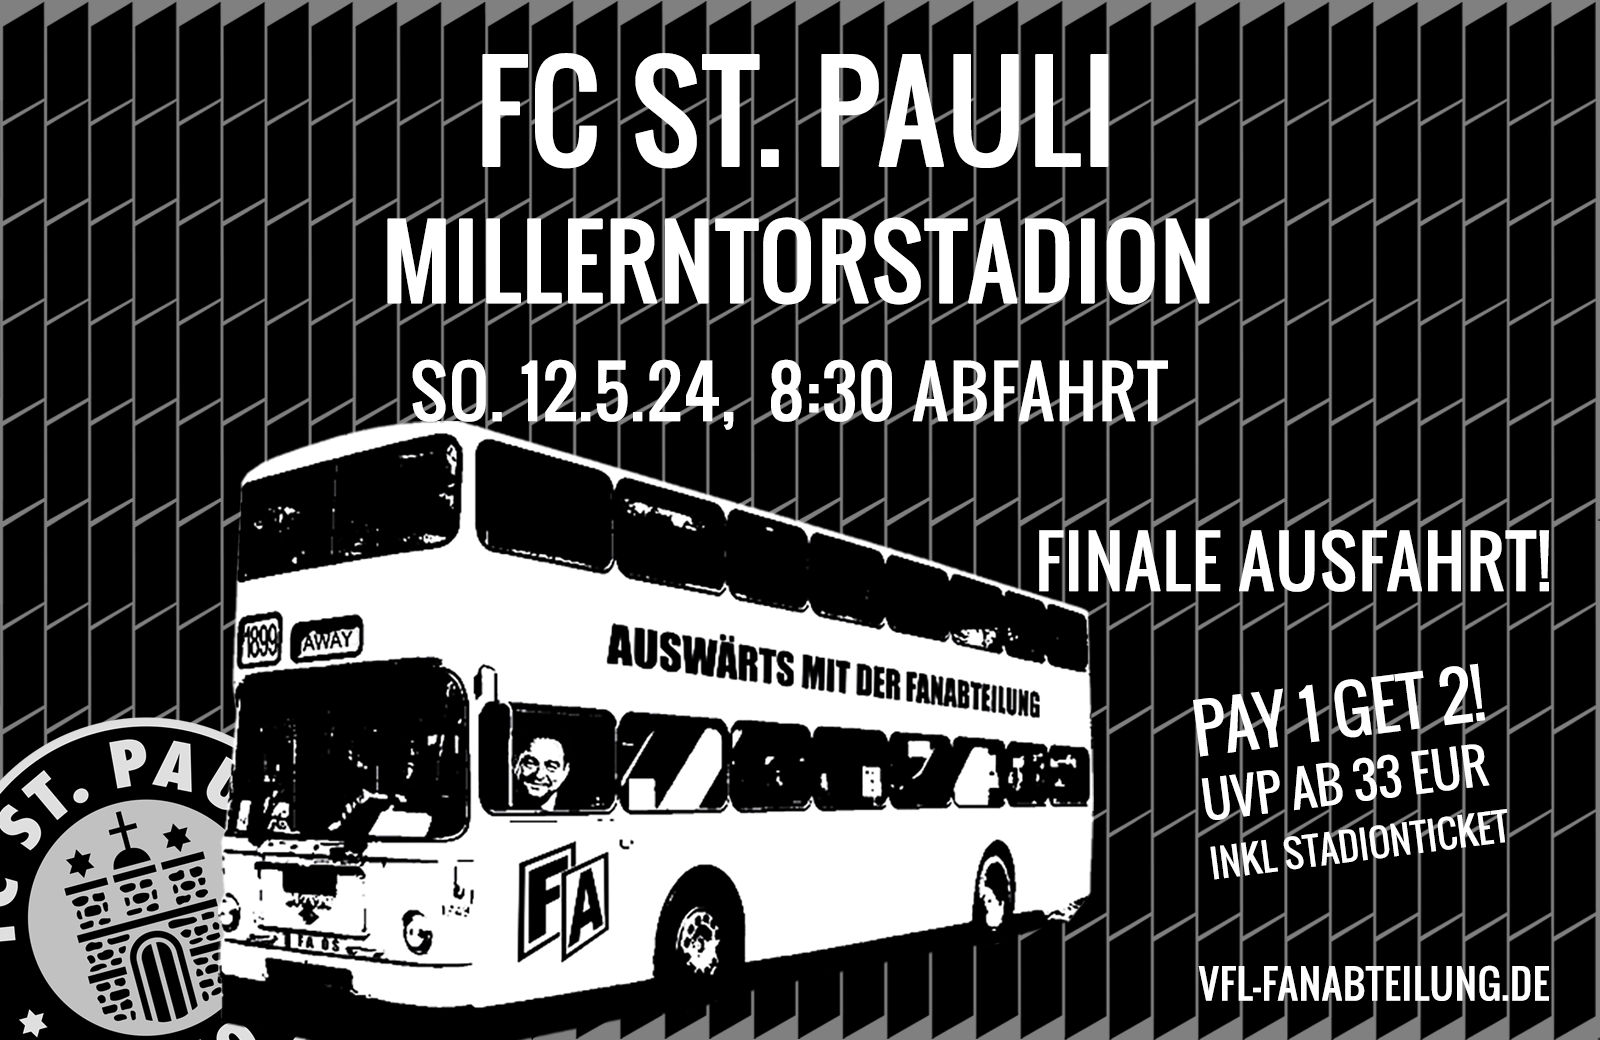 Kombiangebot (Ticket + Fahrt) mit der FA nach Hamburg zu St. Pauli - AUSGEBUCHT